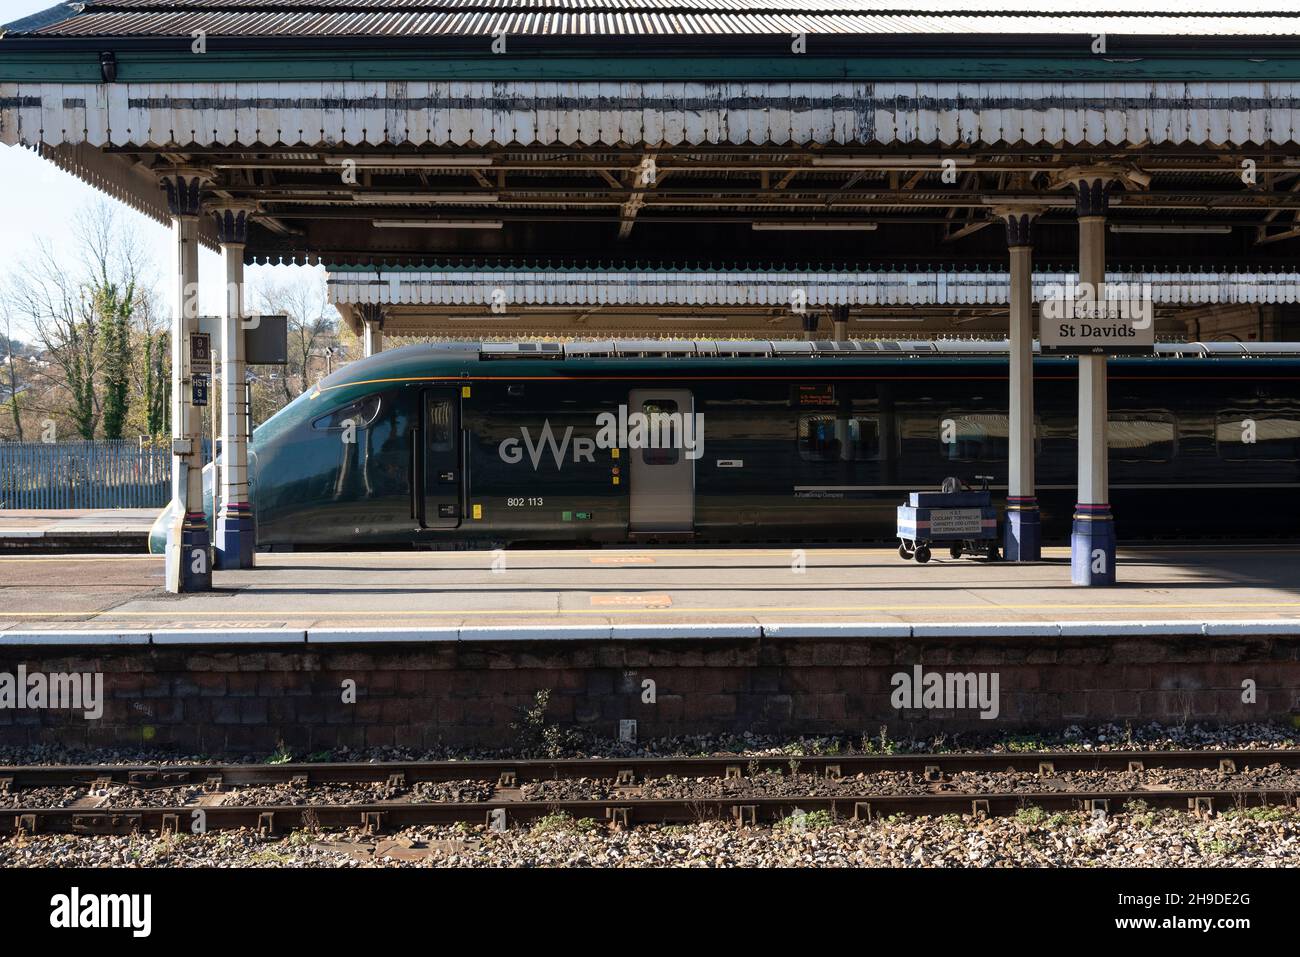 Exeter, Devon, England, Großbritannien. 2021. Ein GWR-Personenzug der Klasse 802 113 auf einem Bahnsteig am Bahnhof von Exeter St David. Stockfoto